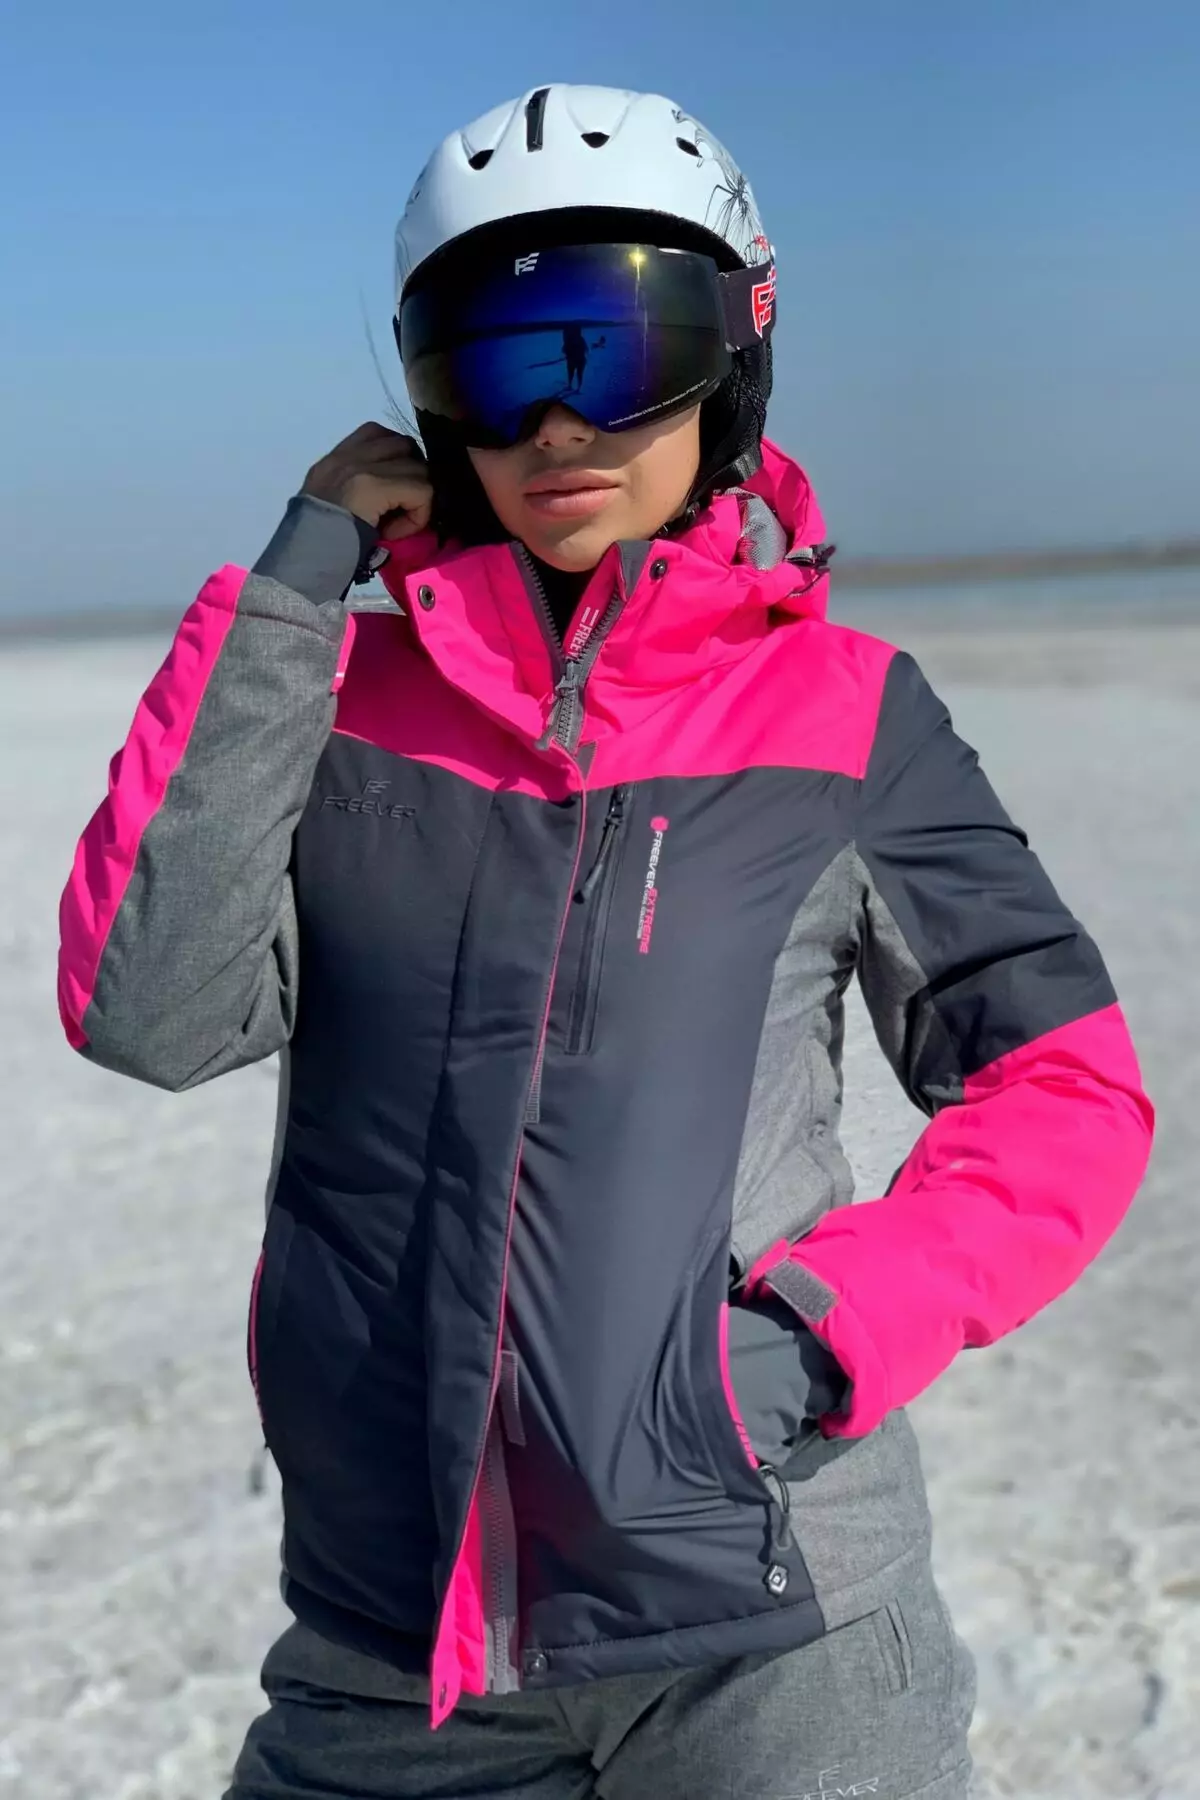 Chaqueta de esquí: Chaqueta de invierno para mujeres para esquiadores de fondo, chaquetas de esquiador para niños y adultos. ¿Cómo elegir para patinar? 20201_27